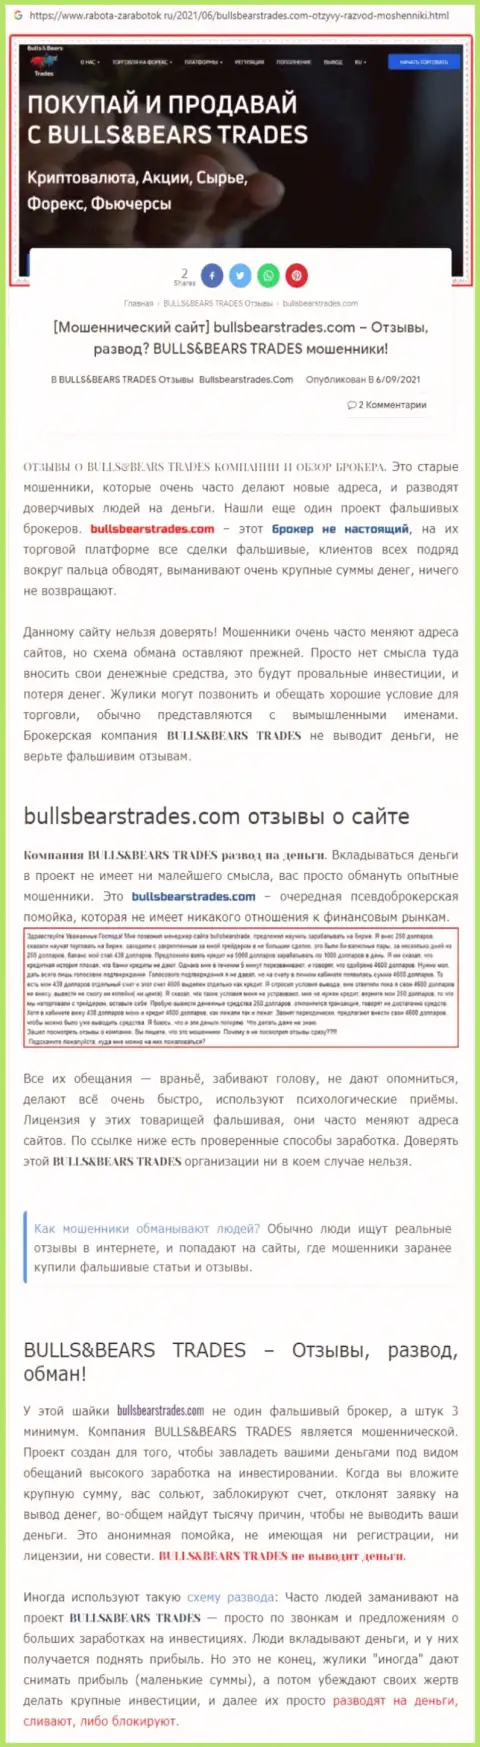 Обзор преступно действующей организации BullsBearsTrades Com о том, как накалывает доверчивых клиентов